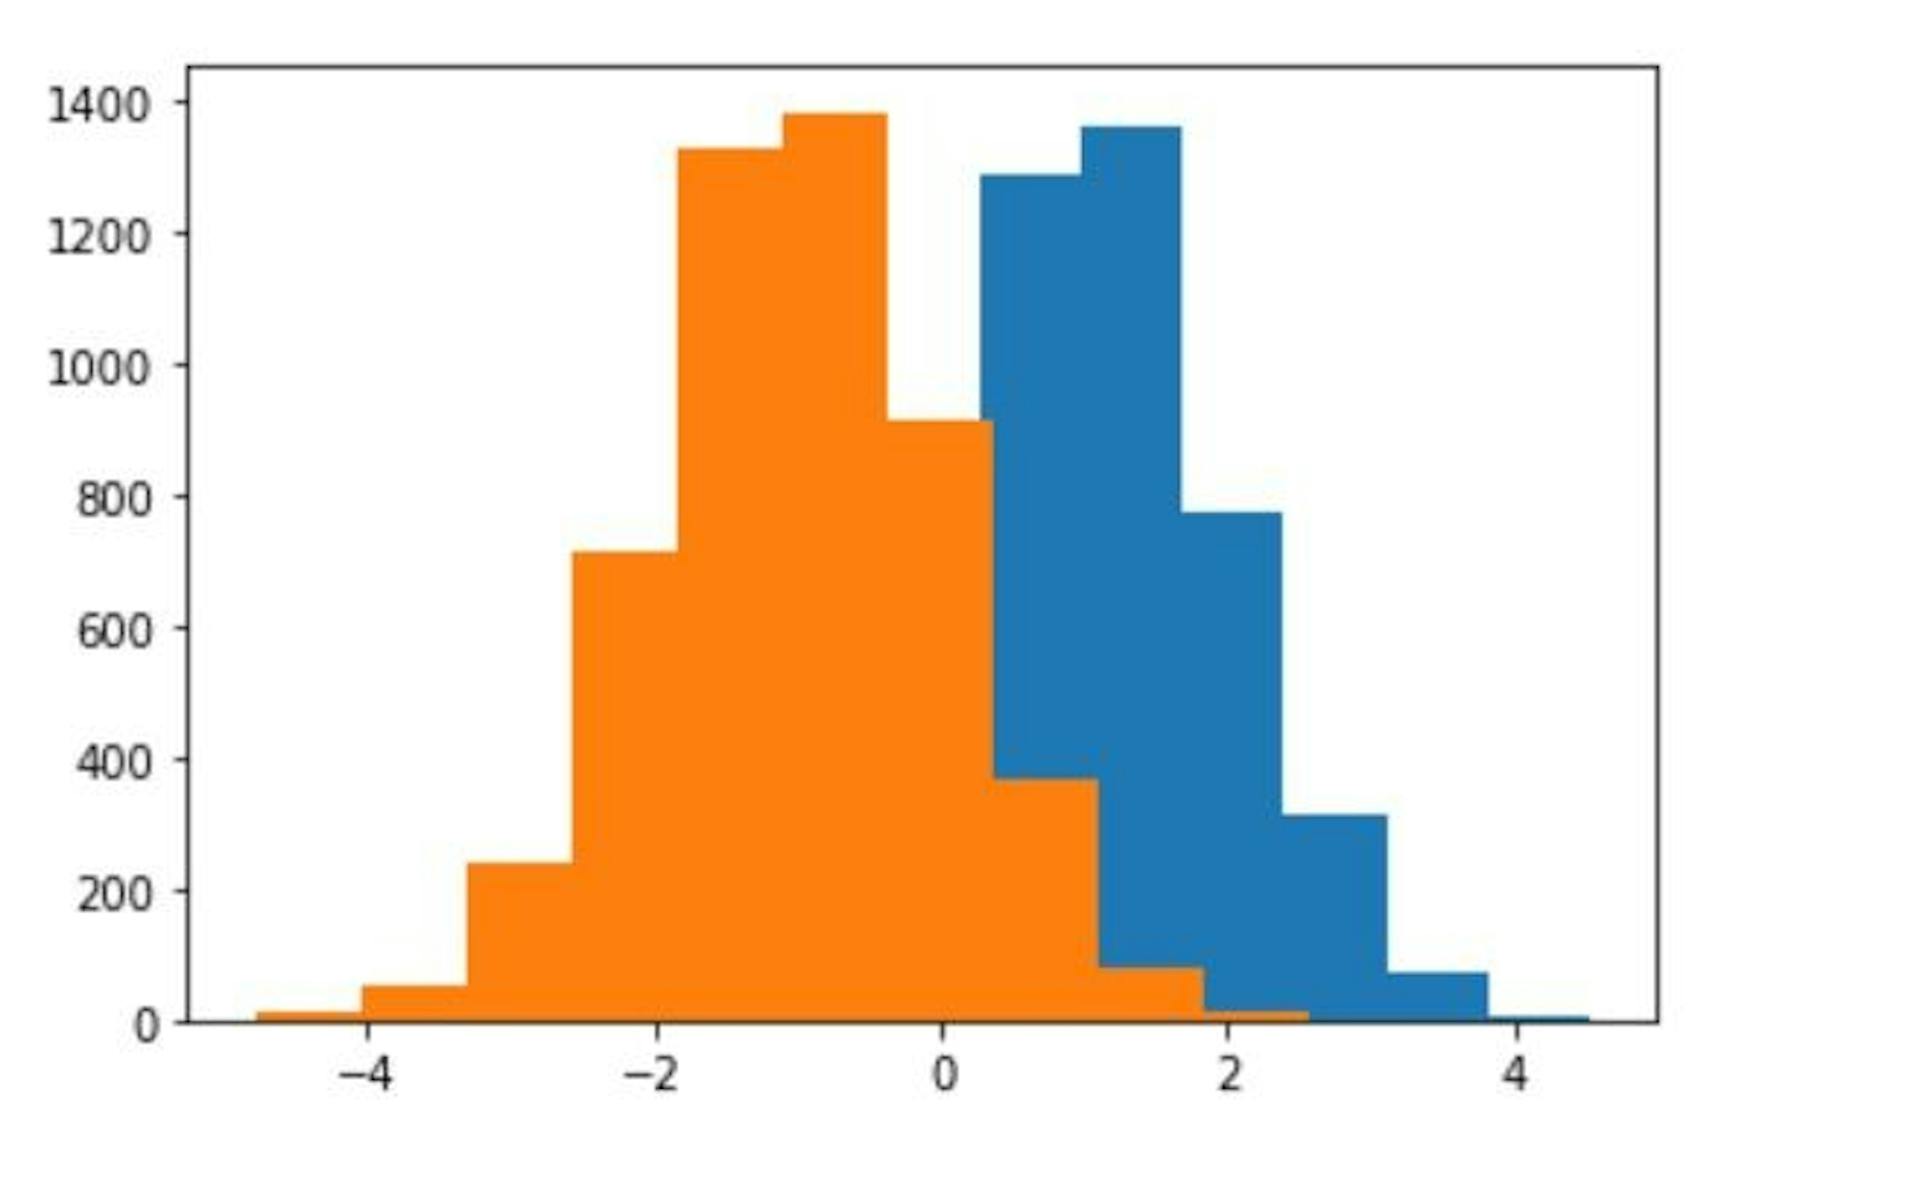 Goods (orange) vs bads (blue) scores